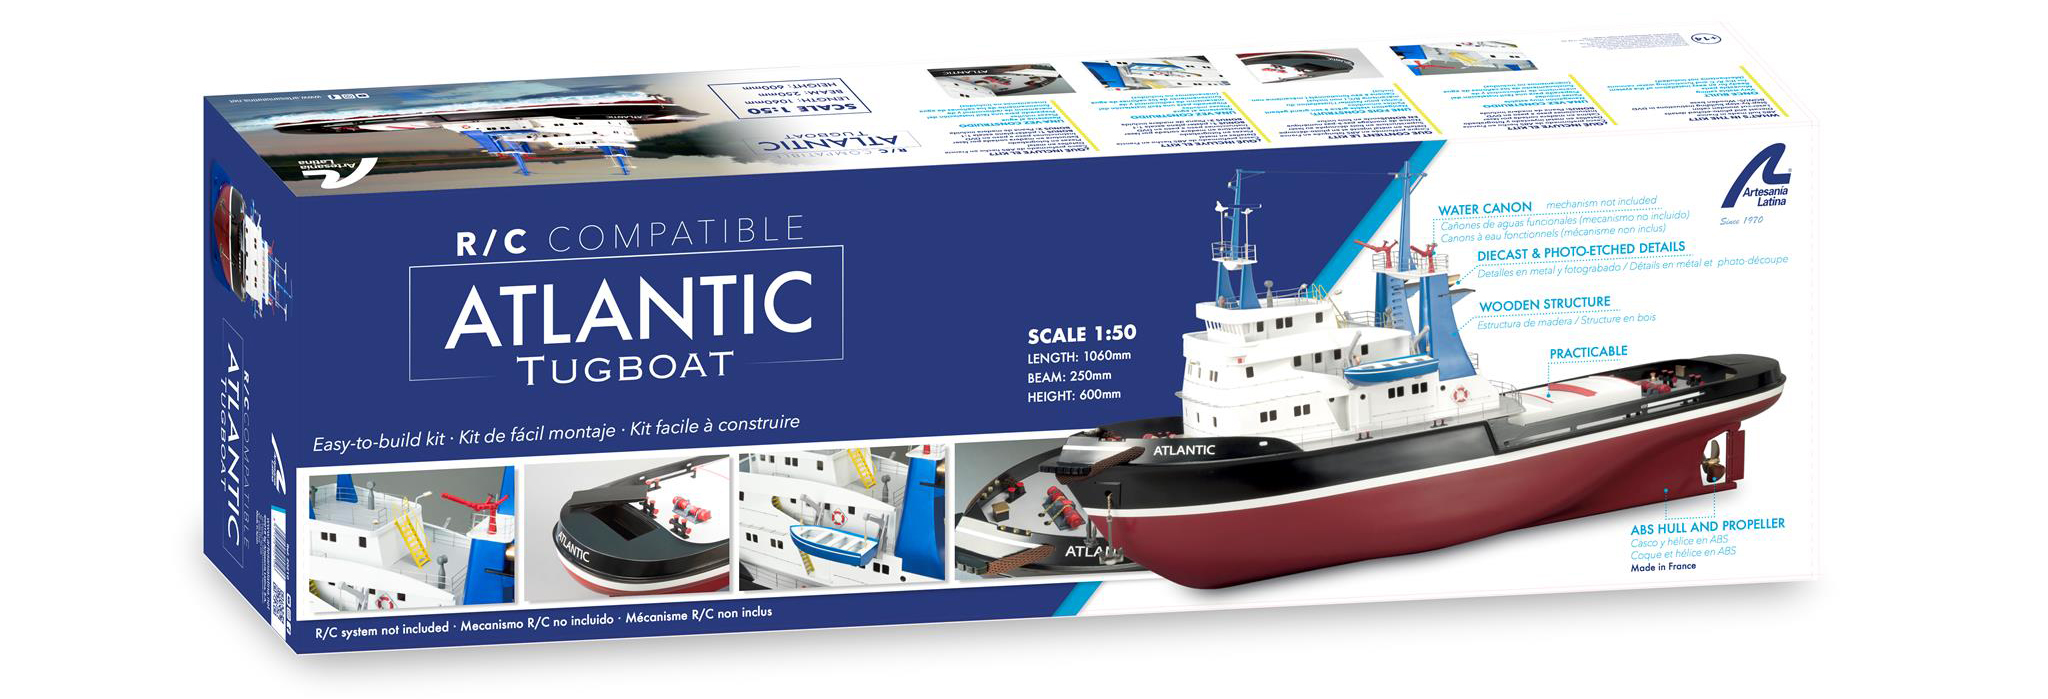 Maqueta Barco R/C Atlantic (20210) Navegable e Iluminable a Escala 1:50 de Artesanía Latina.